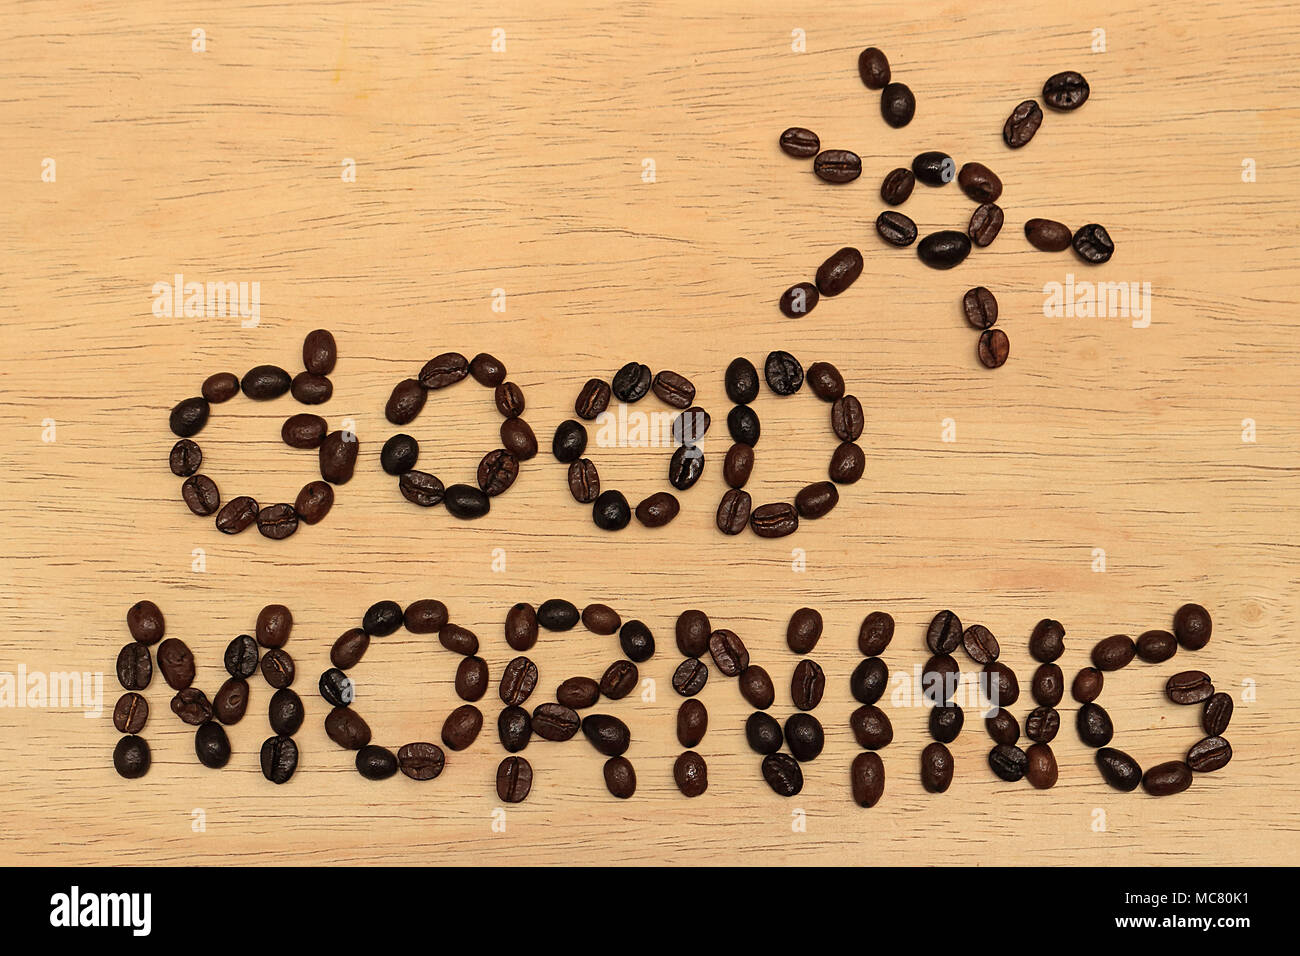 Il y a un message 'Bonjour' et une photo du soleil au-dessus du message, tous faits de grains de café, la toile est une planche de bois. Banque D'Images